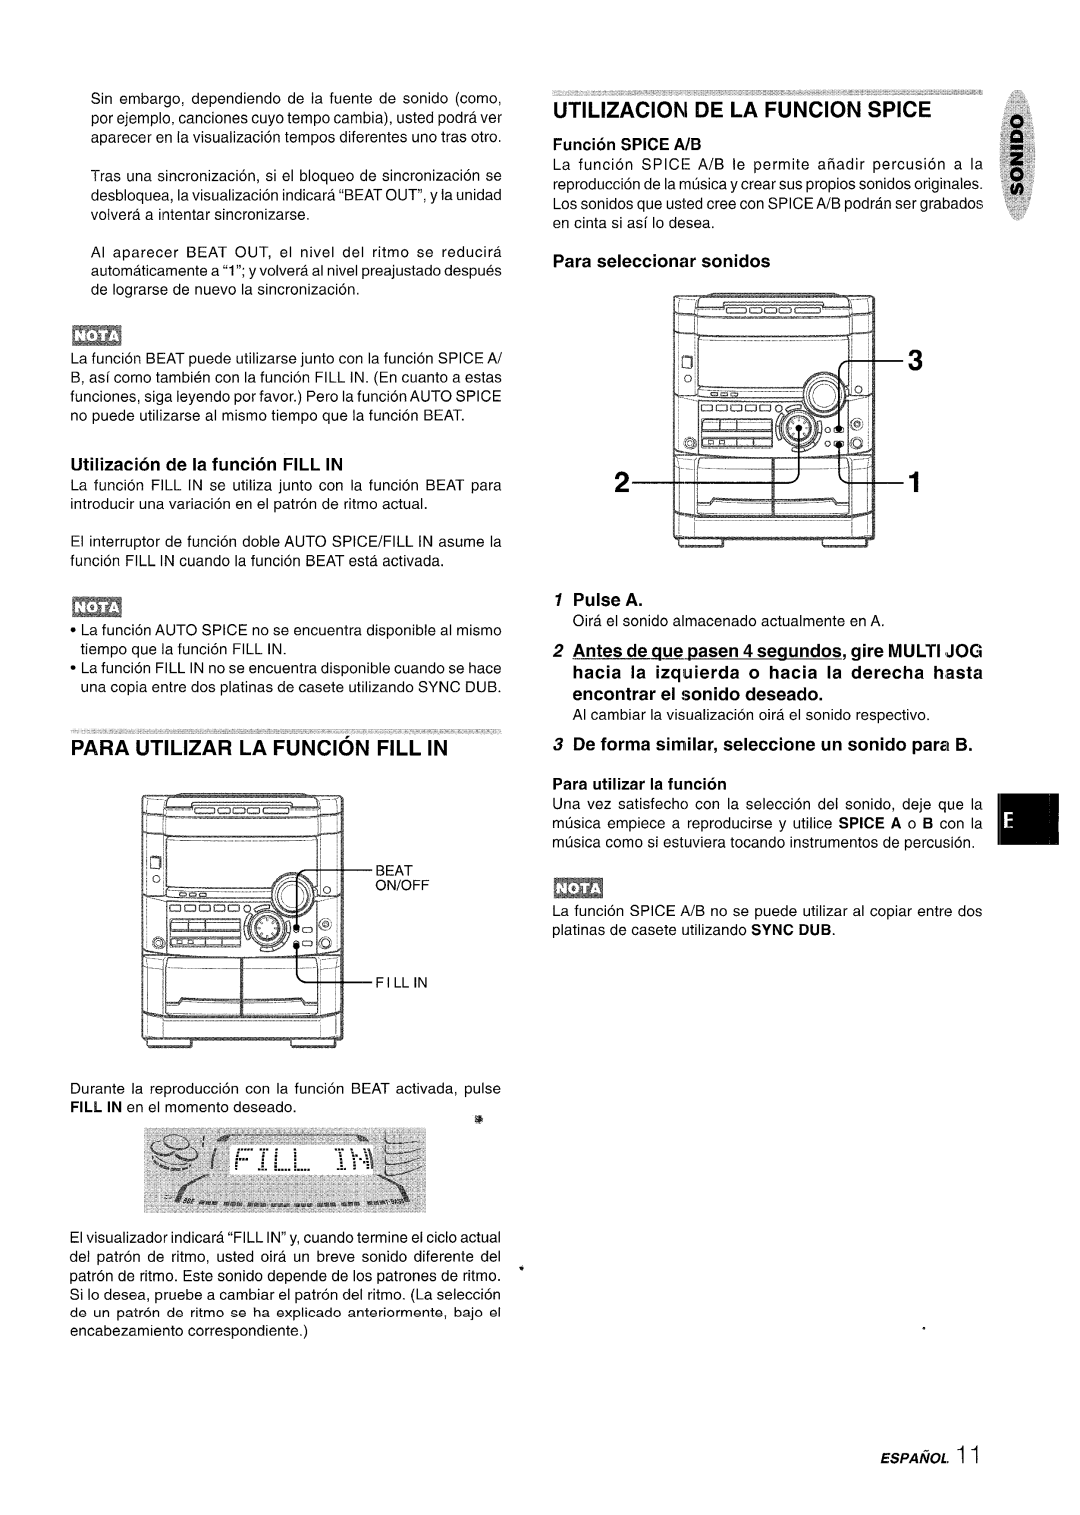 Sony NSX-A777 manual Utilizacioni De La Funcion Spice, Funcion SPICE A/B, Para seleccionar sonidos, Pulse A, ESPANOL. 1 